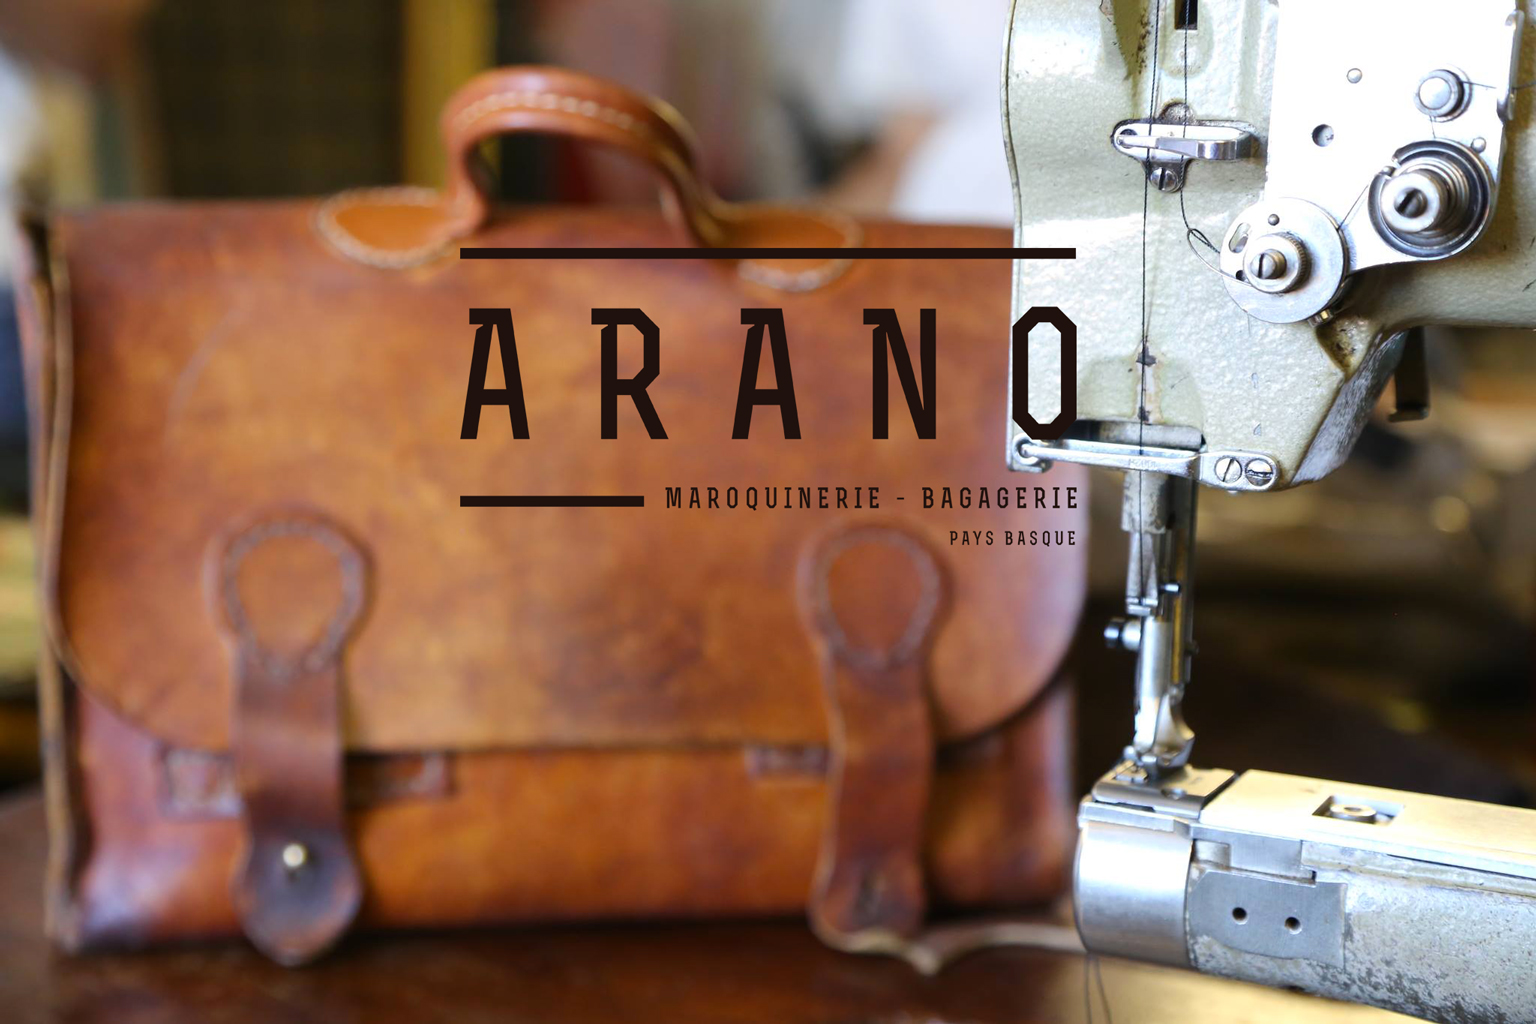 Travail main de haute qualité, Maroquinerie artisanale Arano, proche de Biarritz